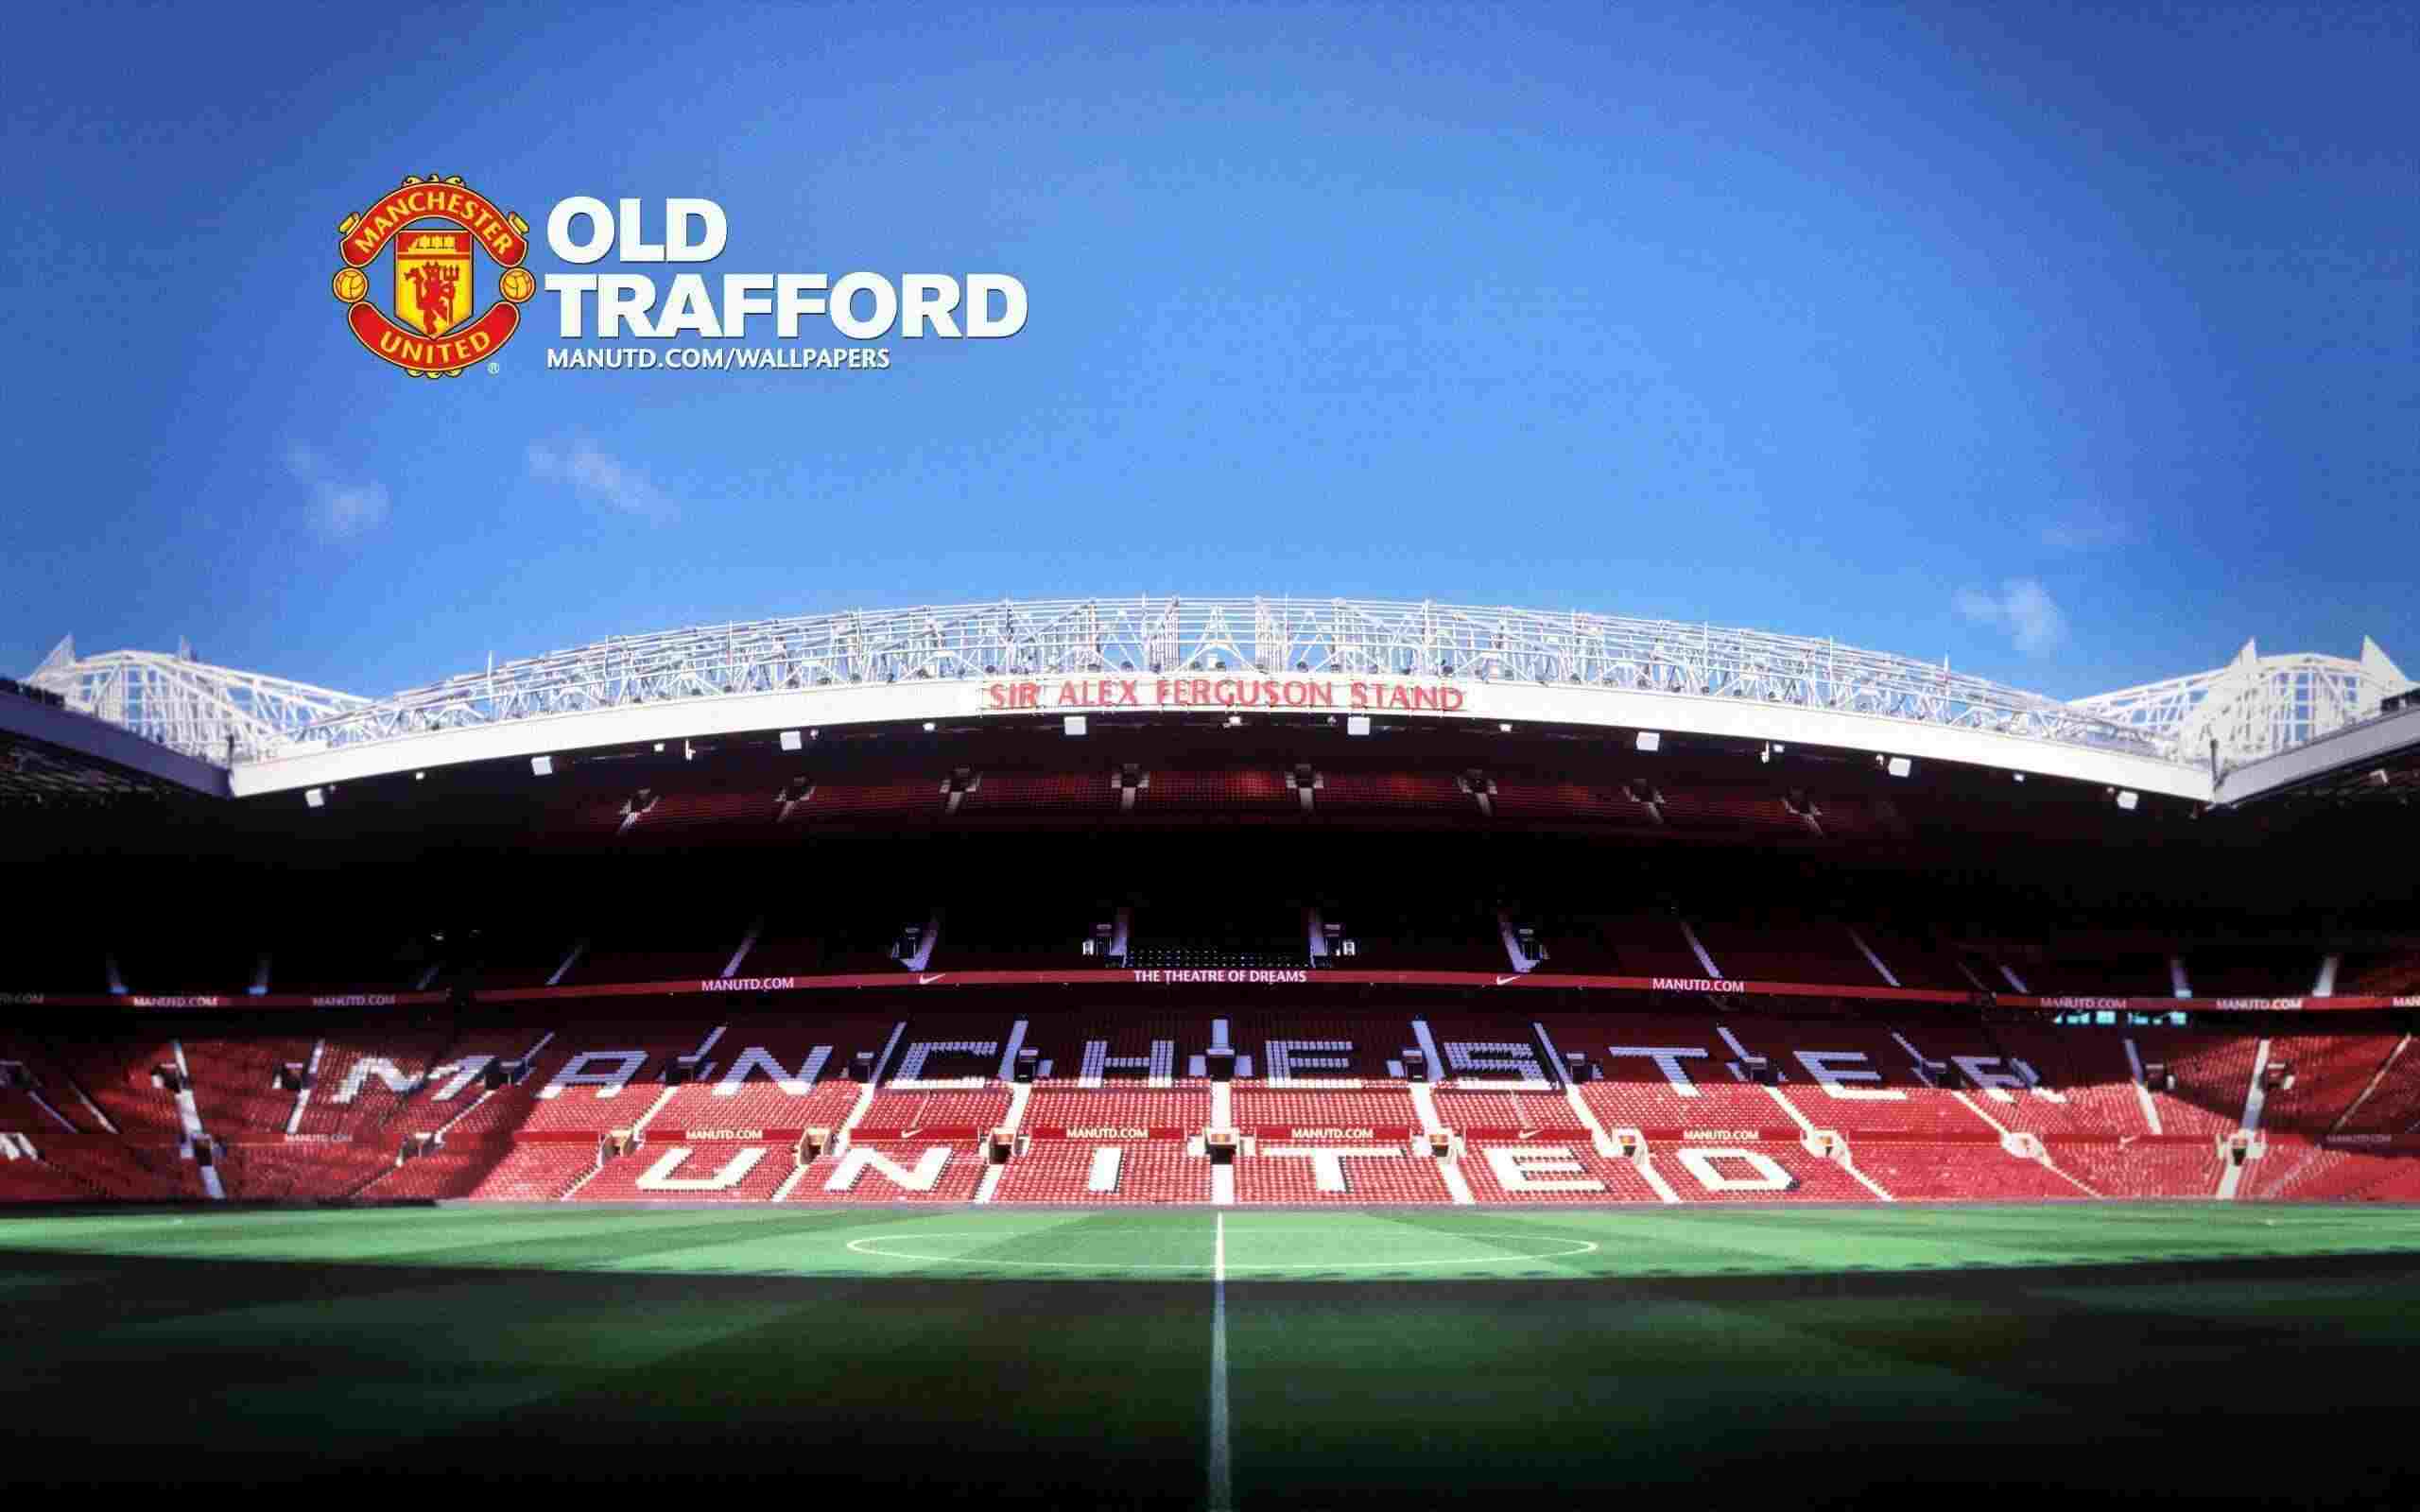 Những hình ảnh về Manchester United – sân nhà Old Trafford